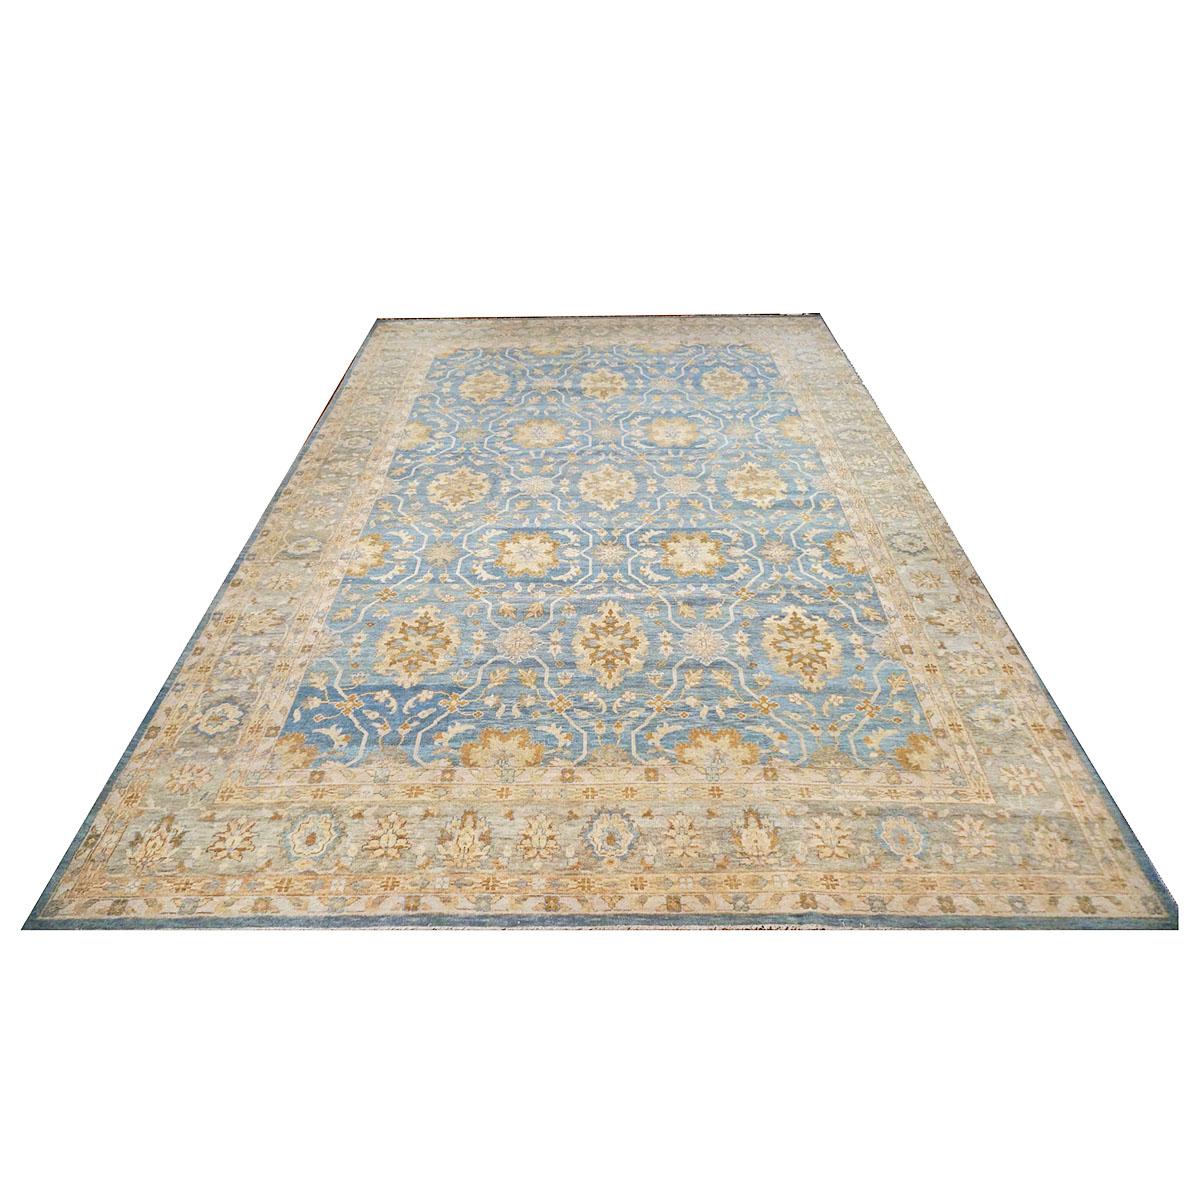 Ashly Fine Rugs présente une reproduction ancienne d'un tapis persan original Sultanabad 10x14 bleu et or fait à la main. Faisant partie de notre propre production antérieure, cette reconstitution antique a été pensée et créée en interne et 100%